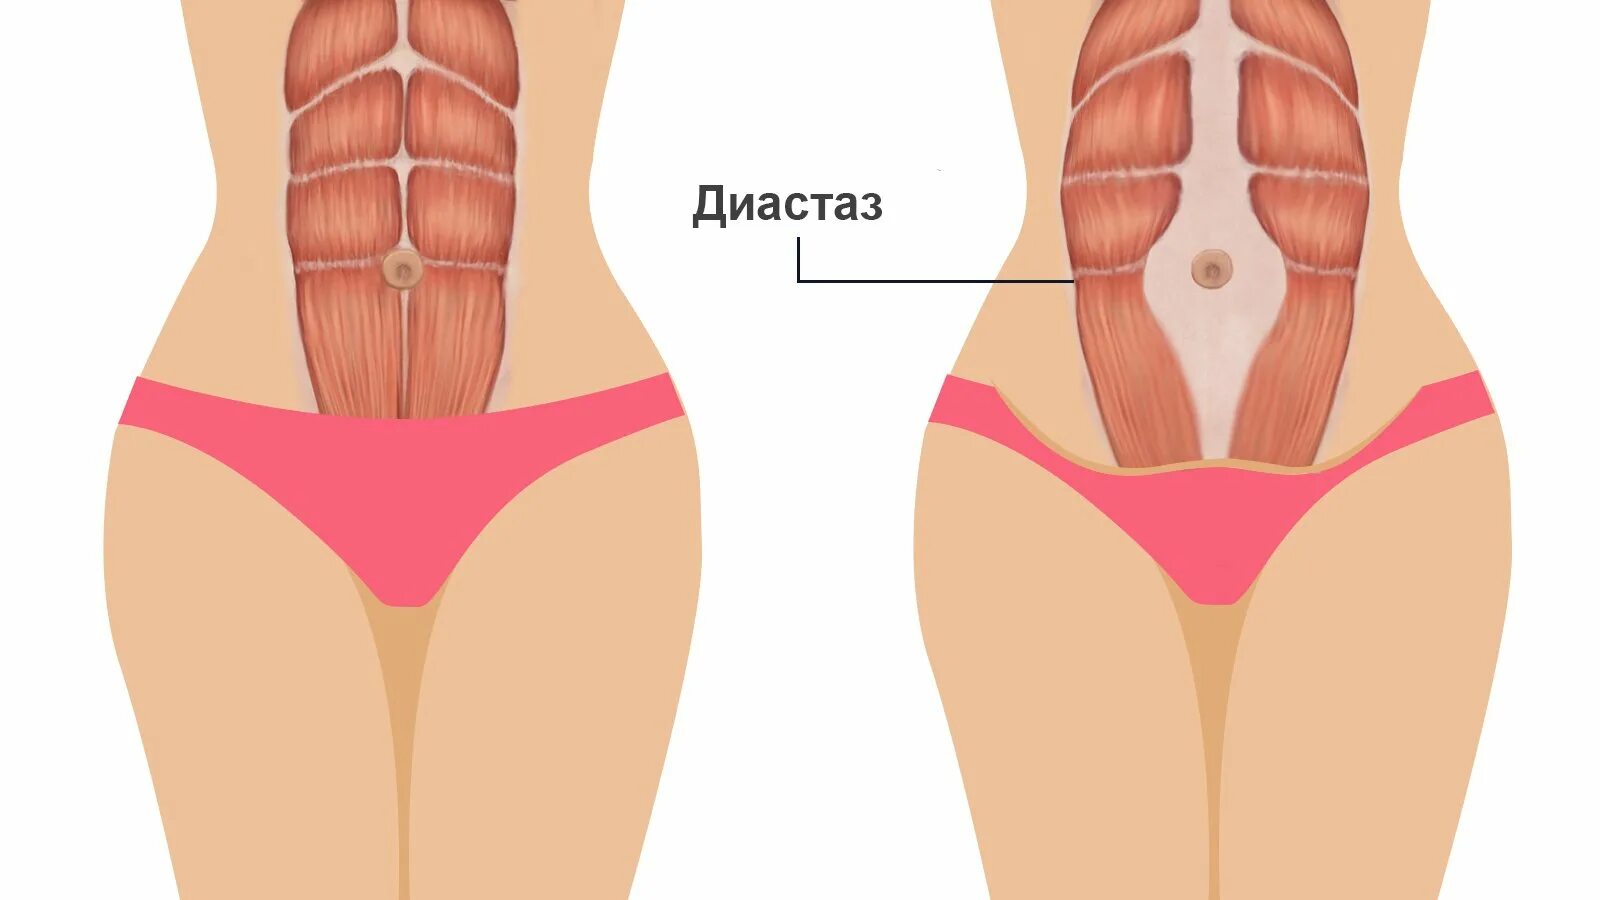 Мышцы живота анатомия диастаз. Прямые мышцы живота диастаз. Диастаз мышц белой линии живота. Прямая мышца живота диастаз.